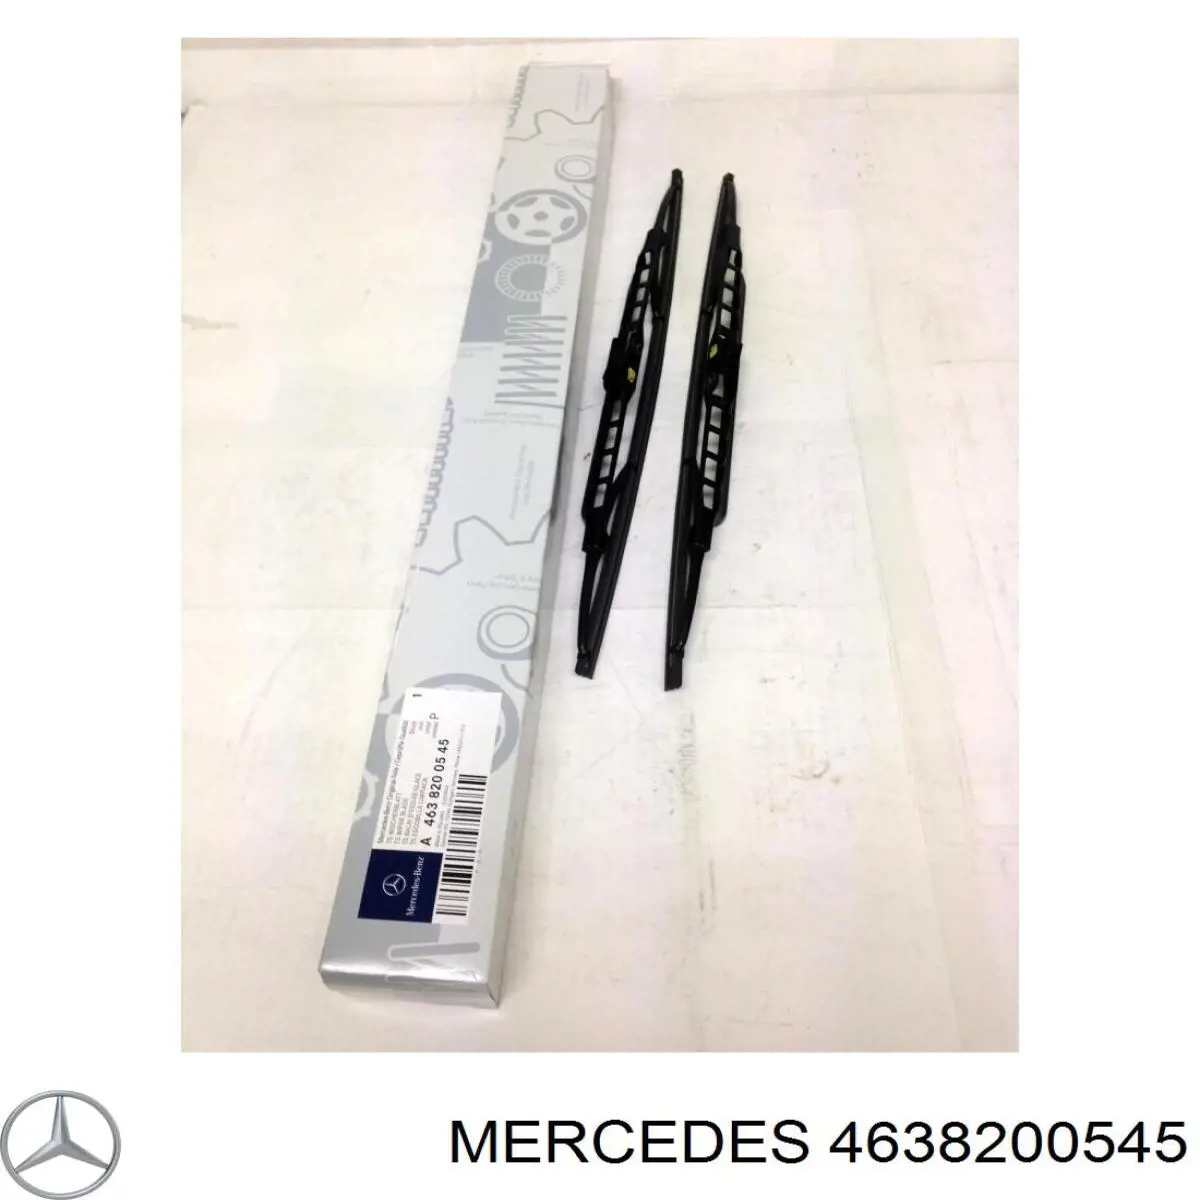 4638200045 Mercedes щетка-дворник лобового стекла, комплект из 2 шт.